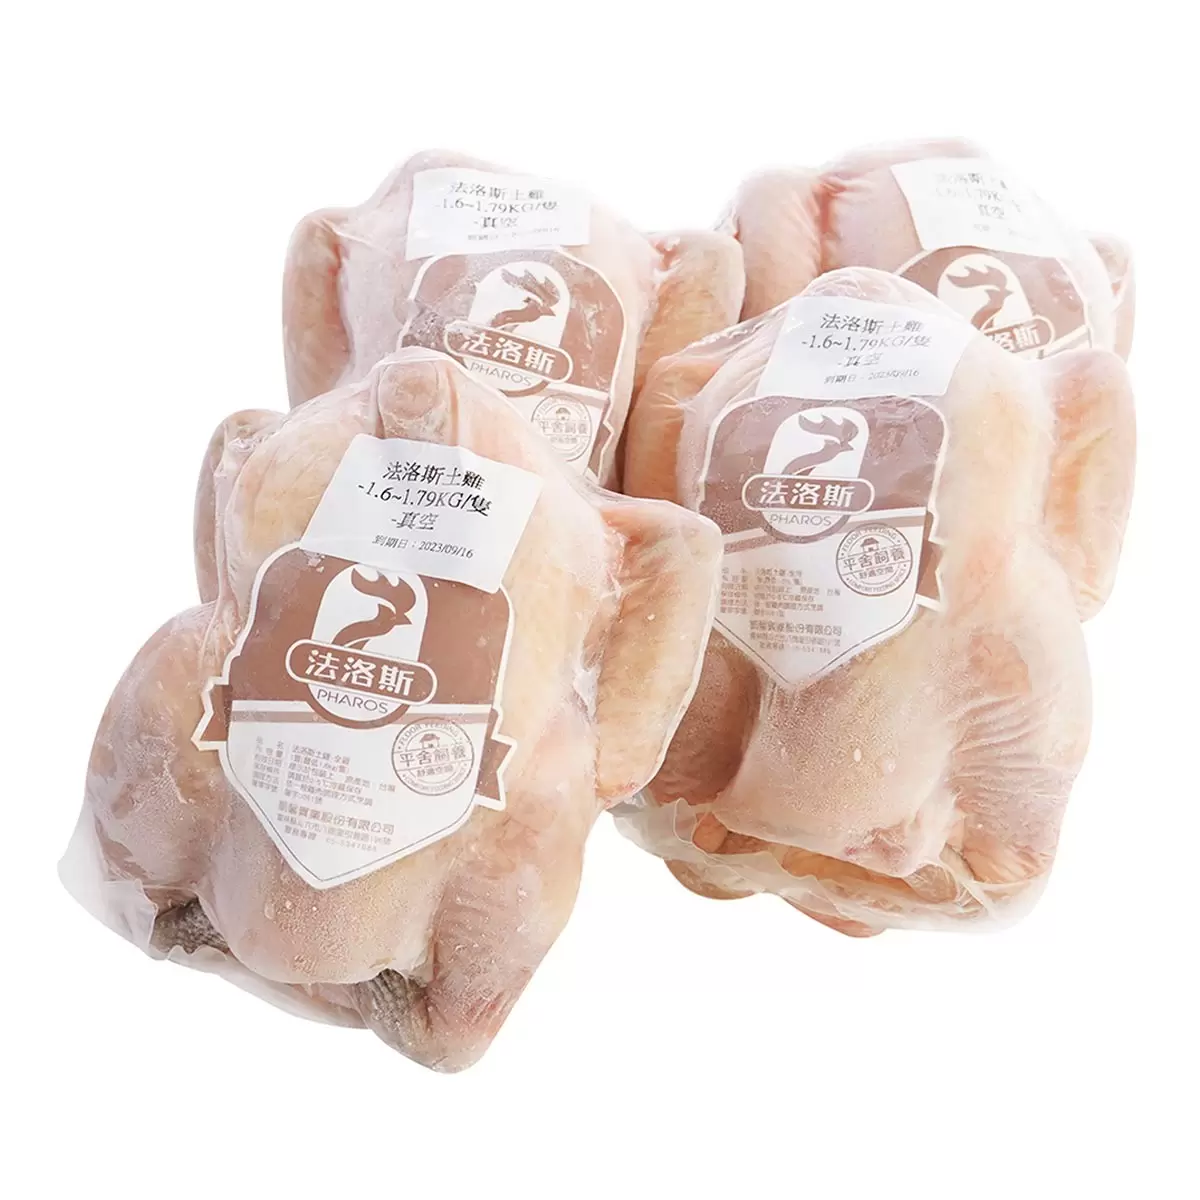 冷凍法洛斯土雞全雞 6.4公斤